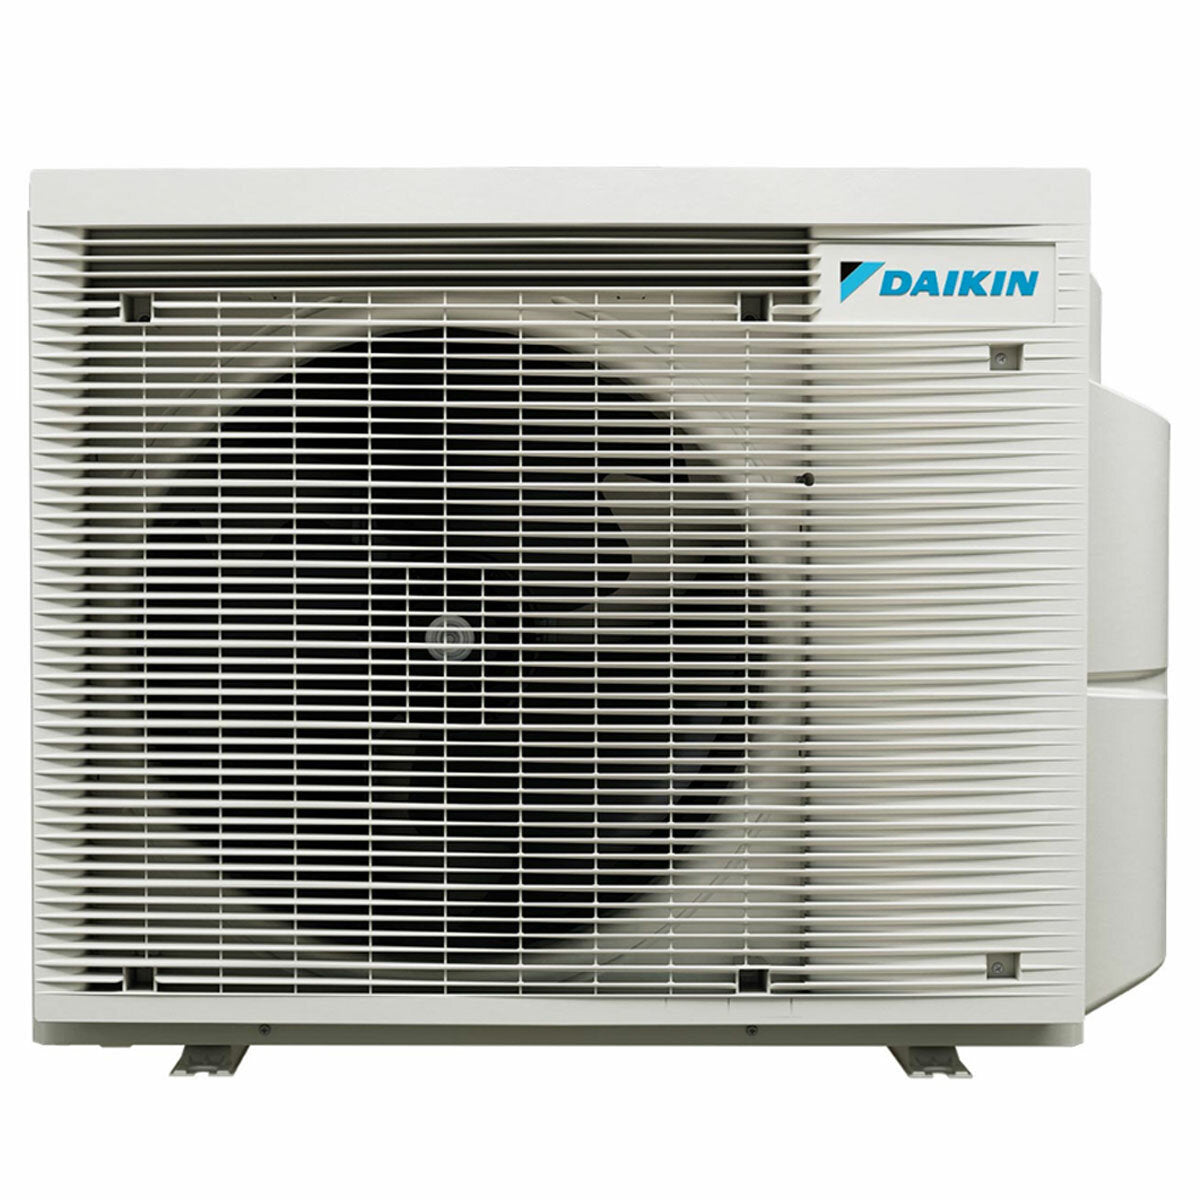 Daikin Stylish White Penta-Split-Klimaanlage 7000+7000+7000+9000+9000 BTU Inverter A++ WLAN-Außeneinheit 7,8 kW